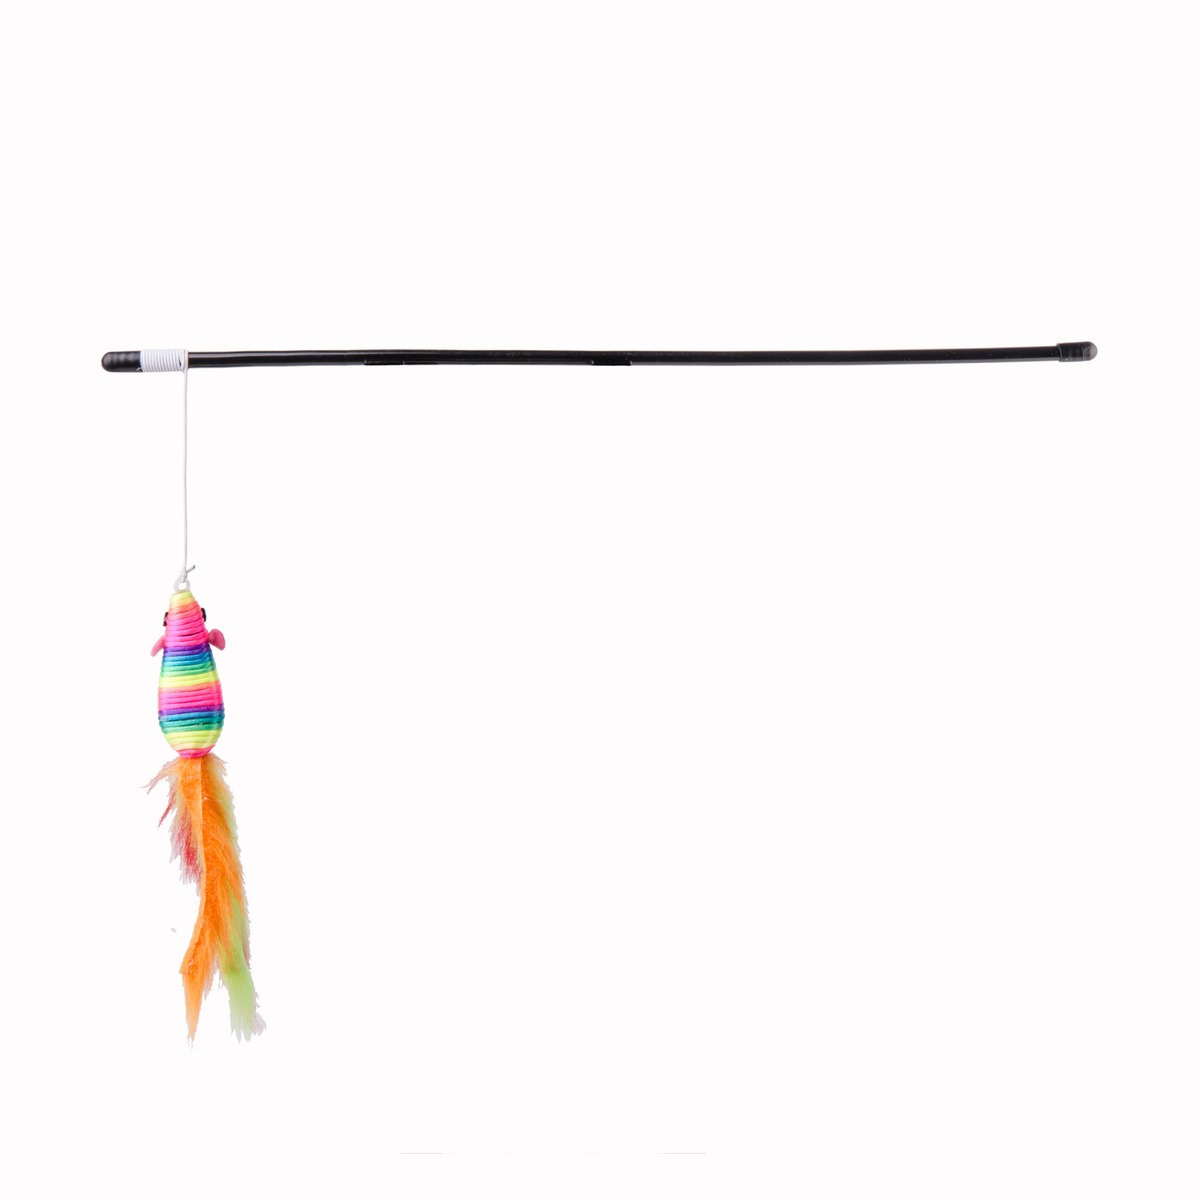 Jouet pour chat bâton modèle souris - Hauteur 46 cm - Multicolore